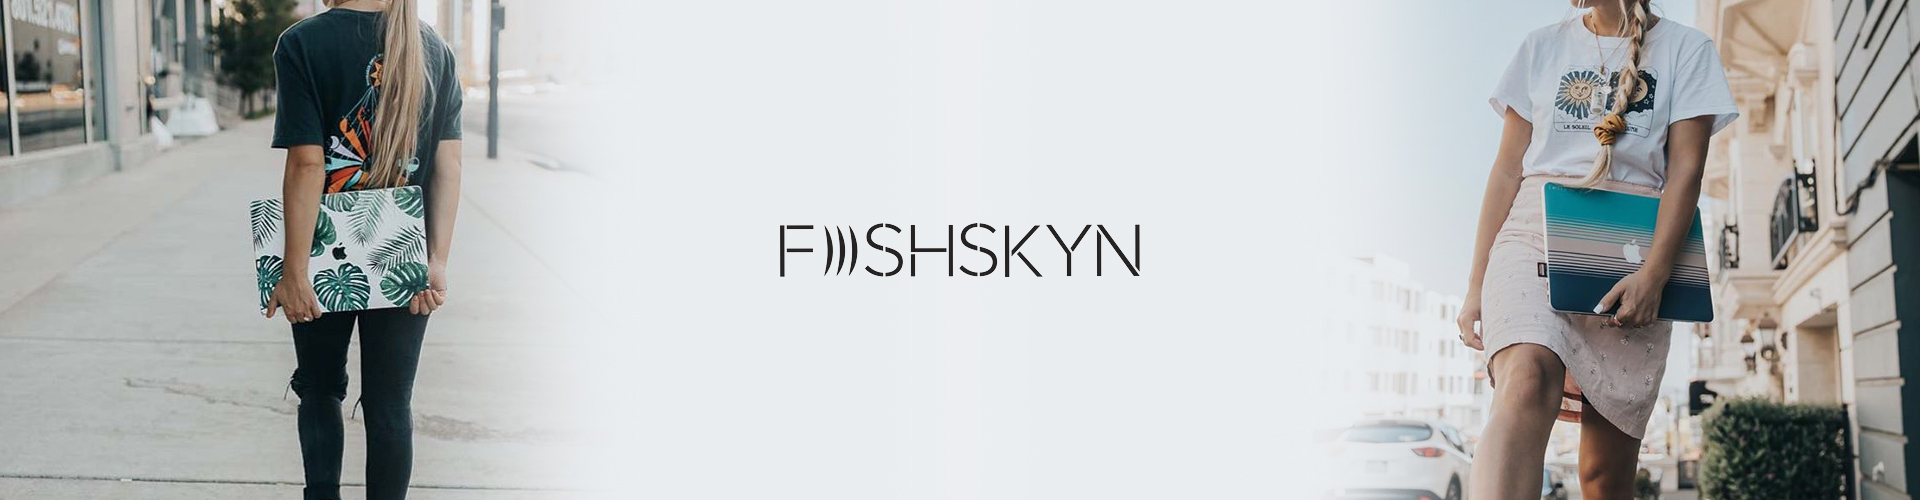 Case Study - Fishskyn